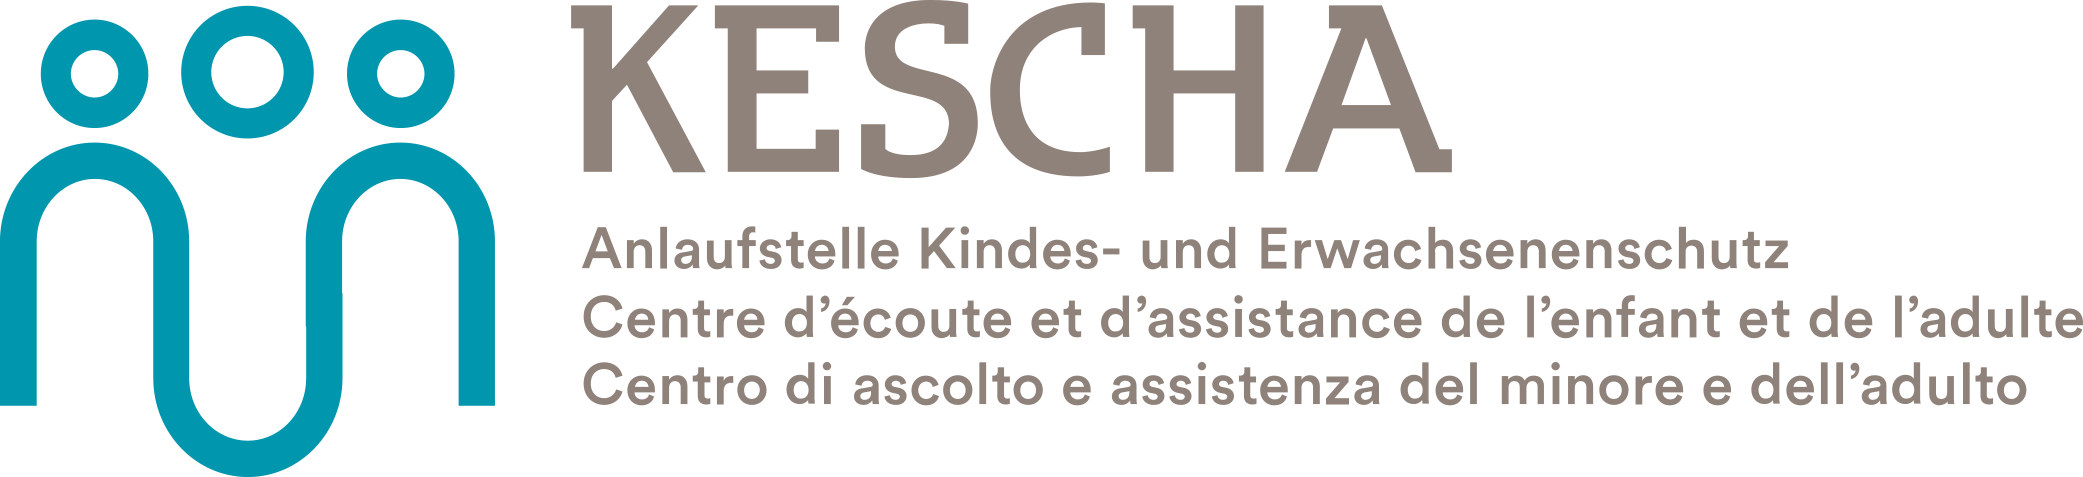 kescha logo mit text